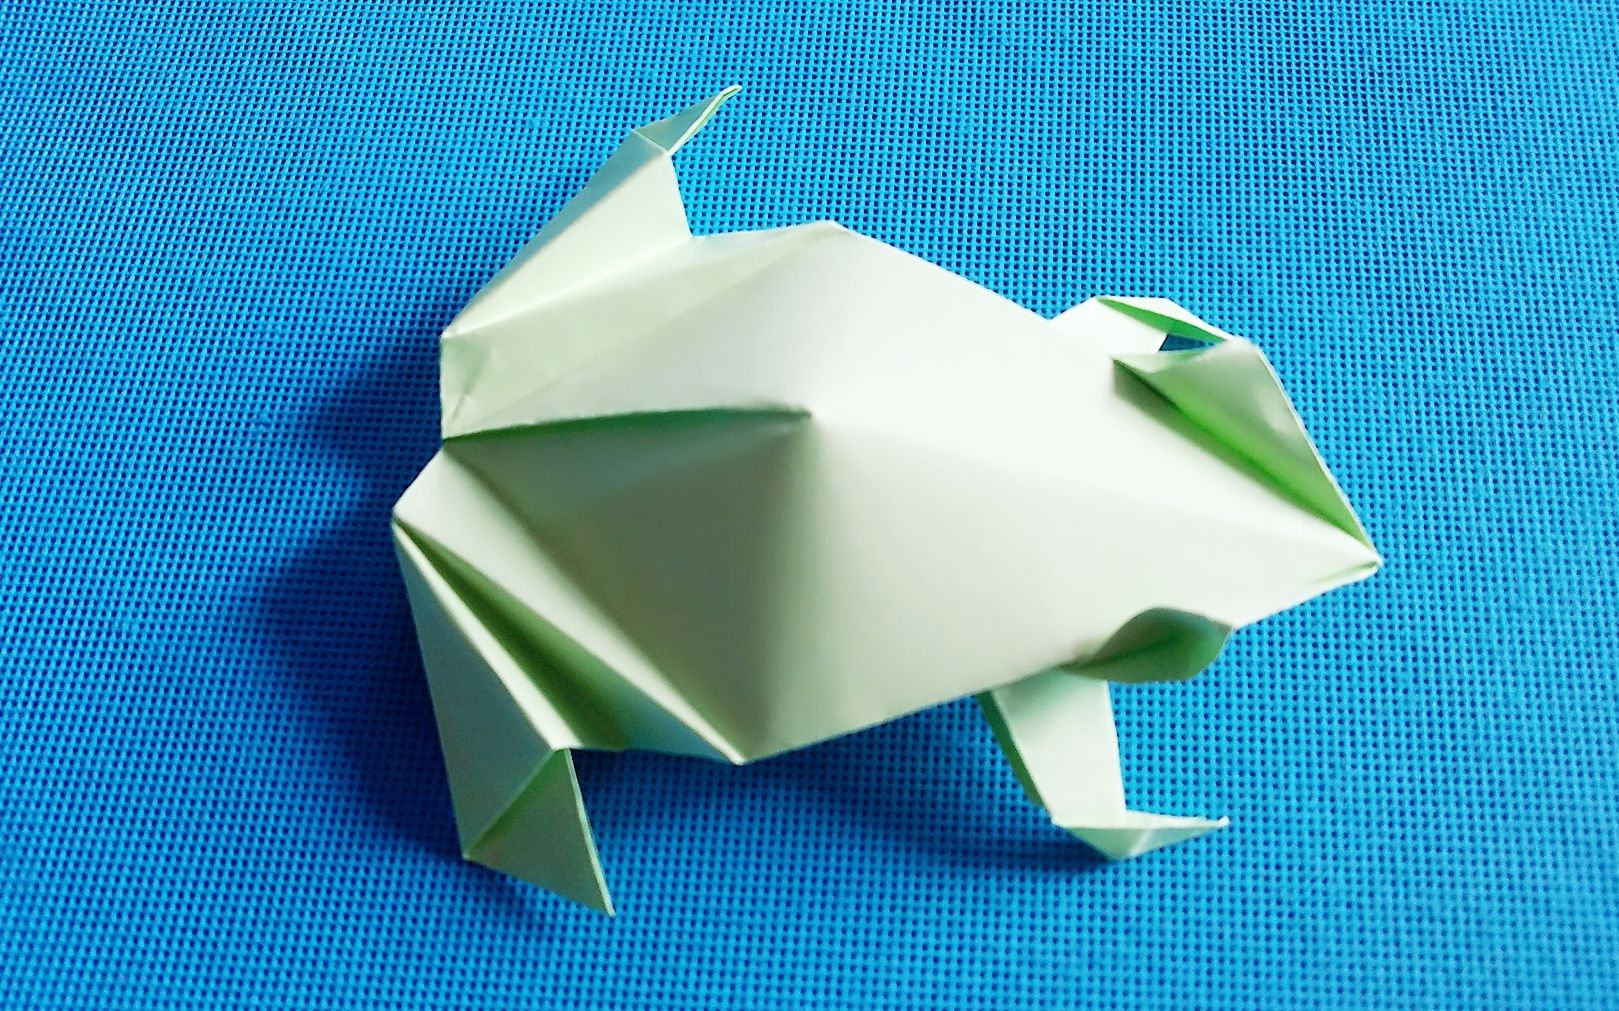 【折纸】青蛙折纸 ????_哔哩哔哩_bilibili